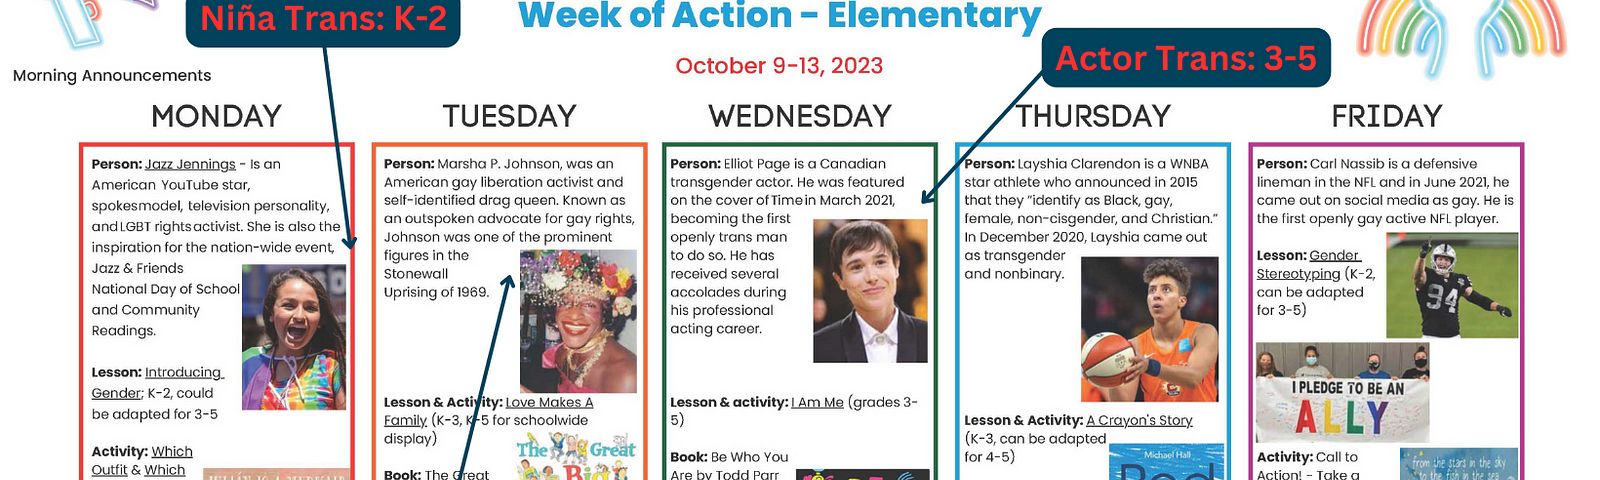 Imágen de National Coming Out Day Week of Action Toolkit for Elementary schools, publicadas por el Distrito Escolar Unificado de Los Ángeles marcado por el autor.